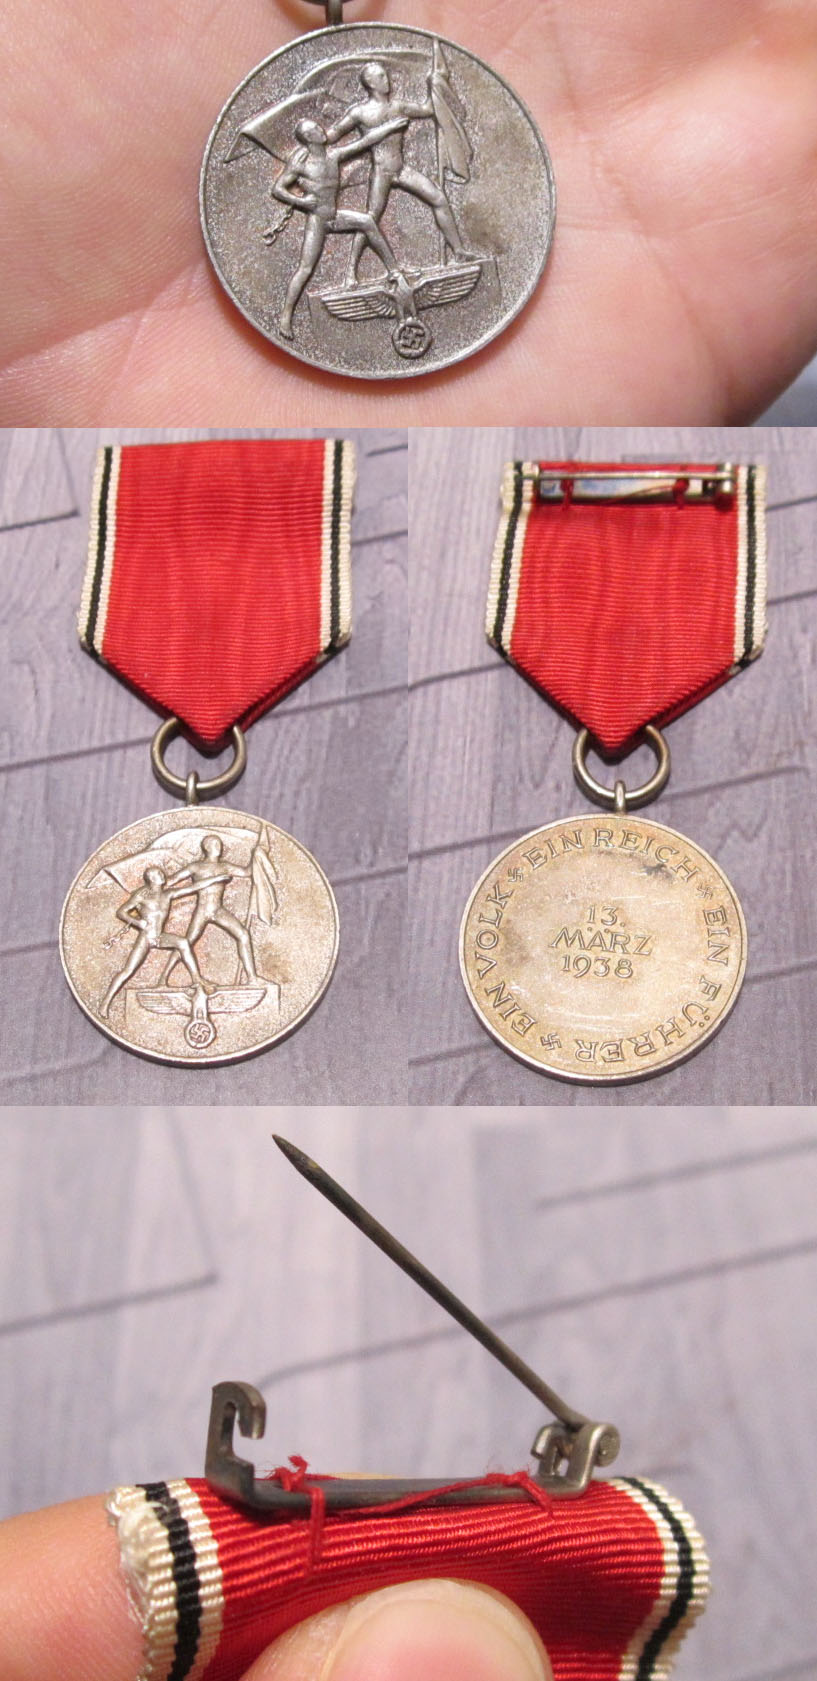 13 March 1938 Com. Medal (Austria)